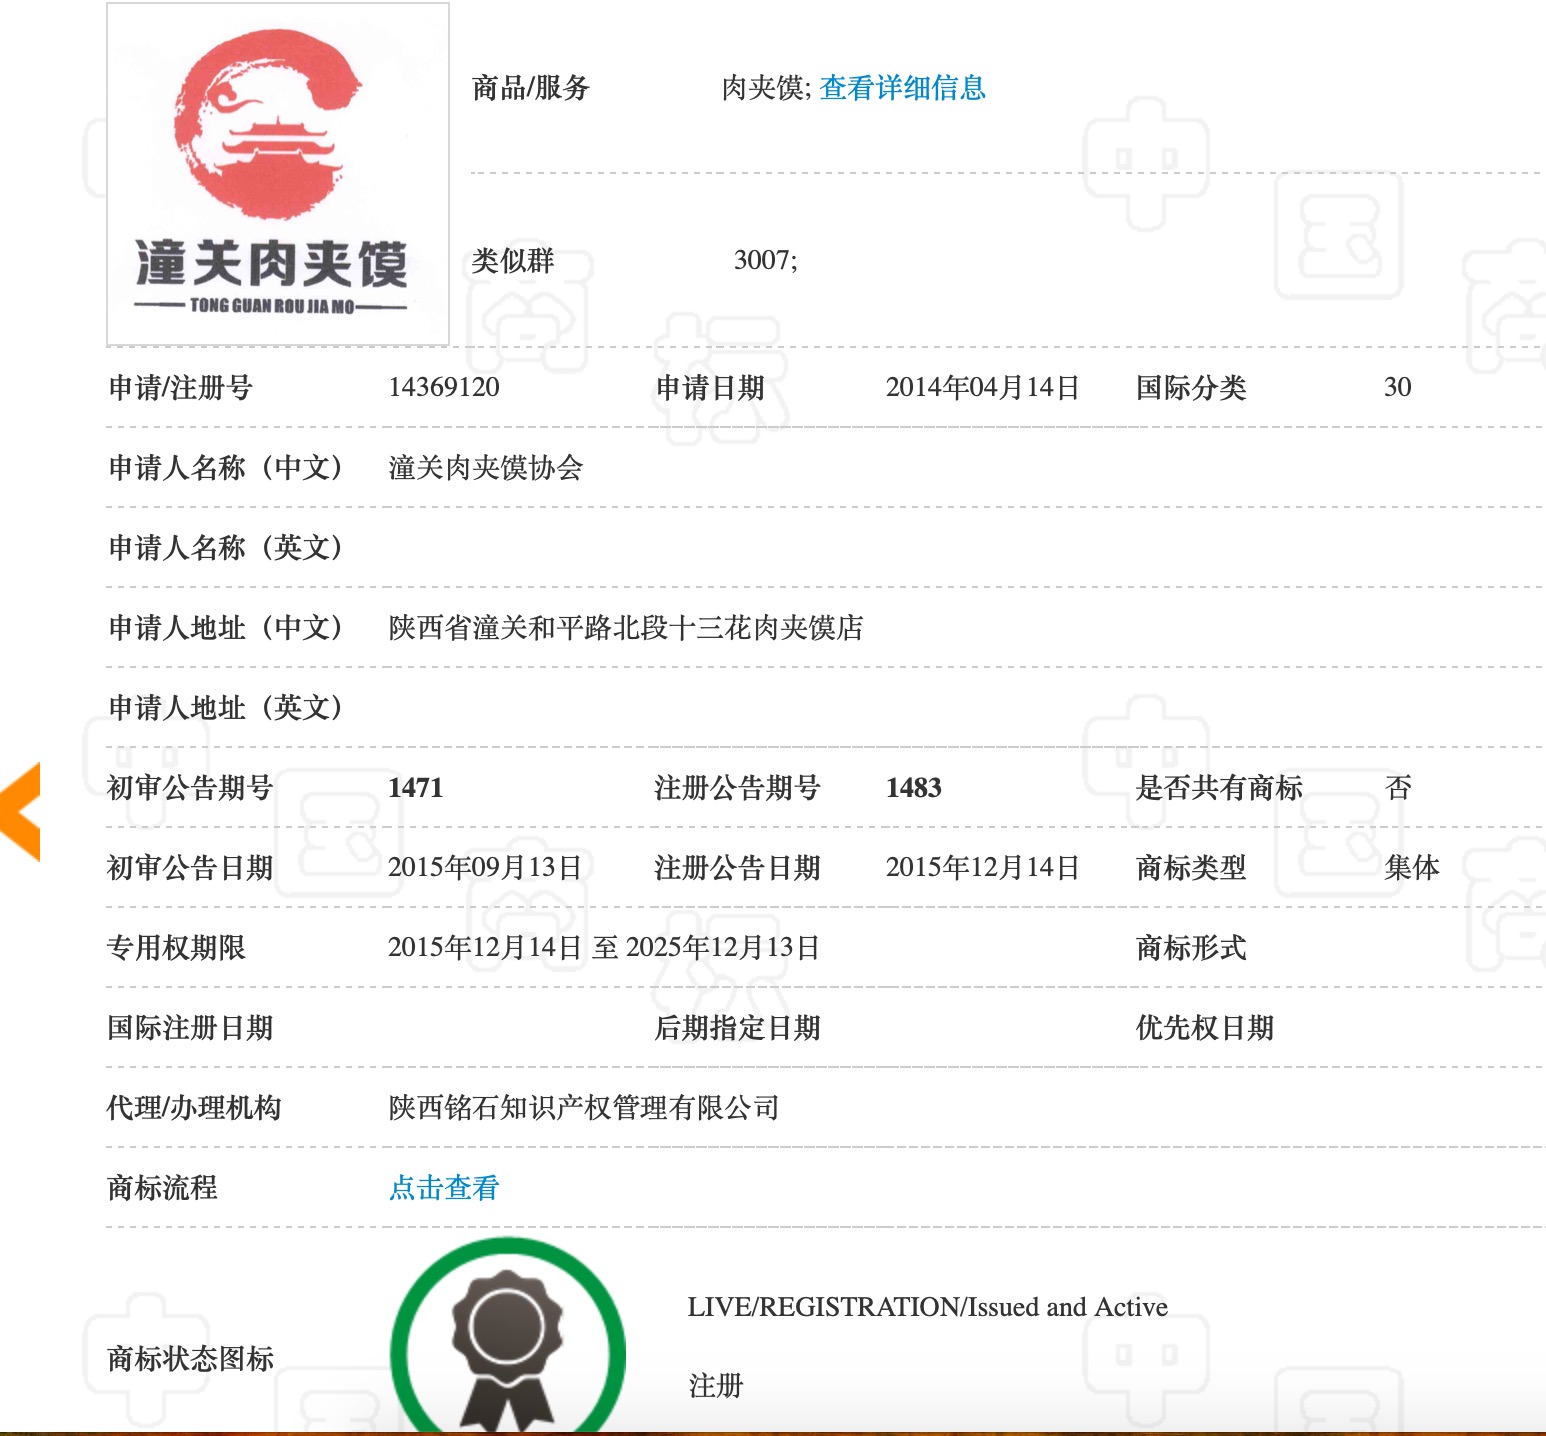 潼关肉夹馍协会注册的“集体”商标 来源：中国商标网截图 